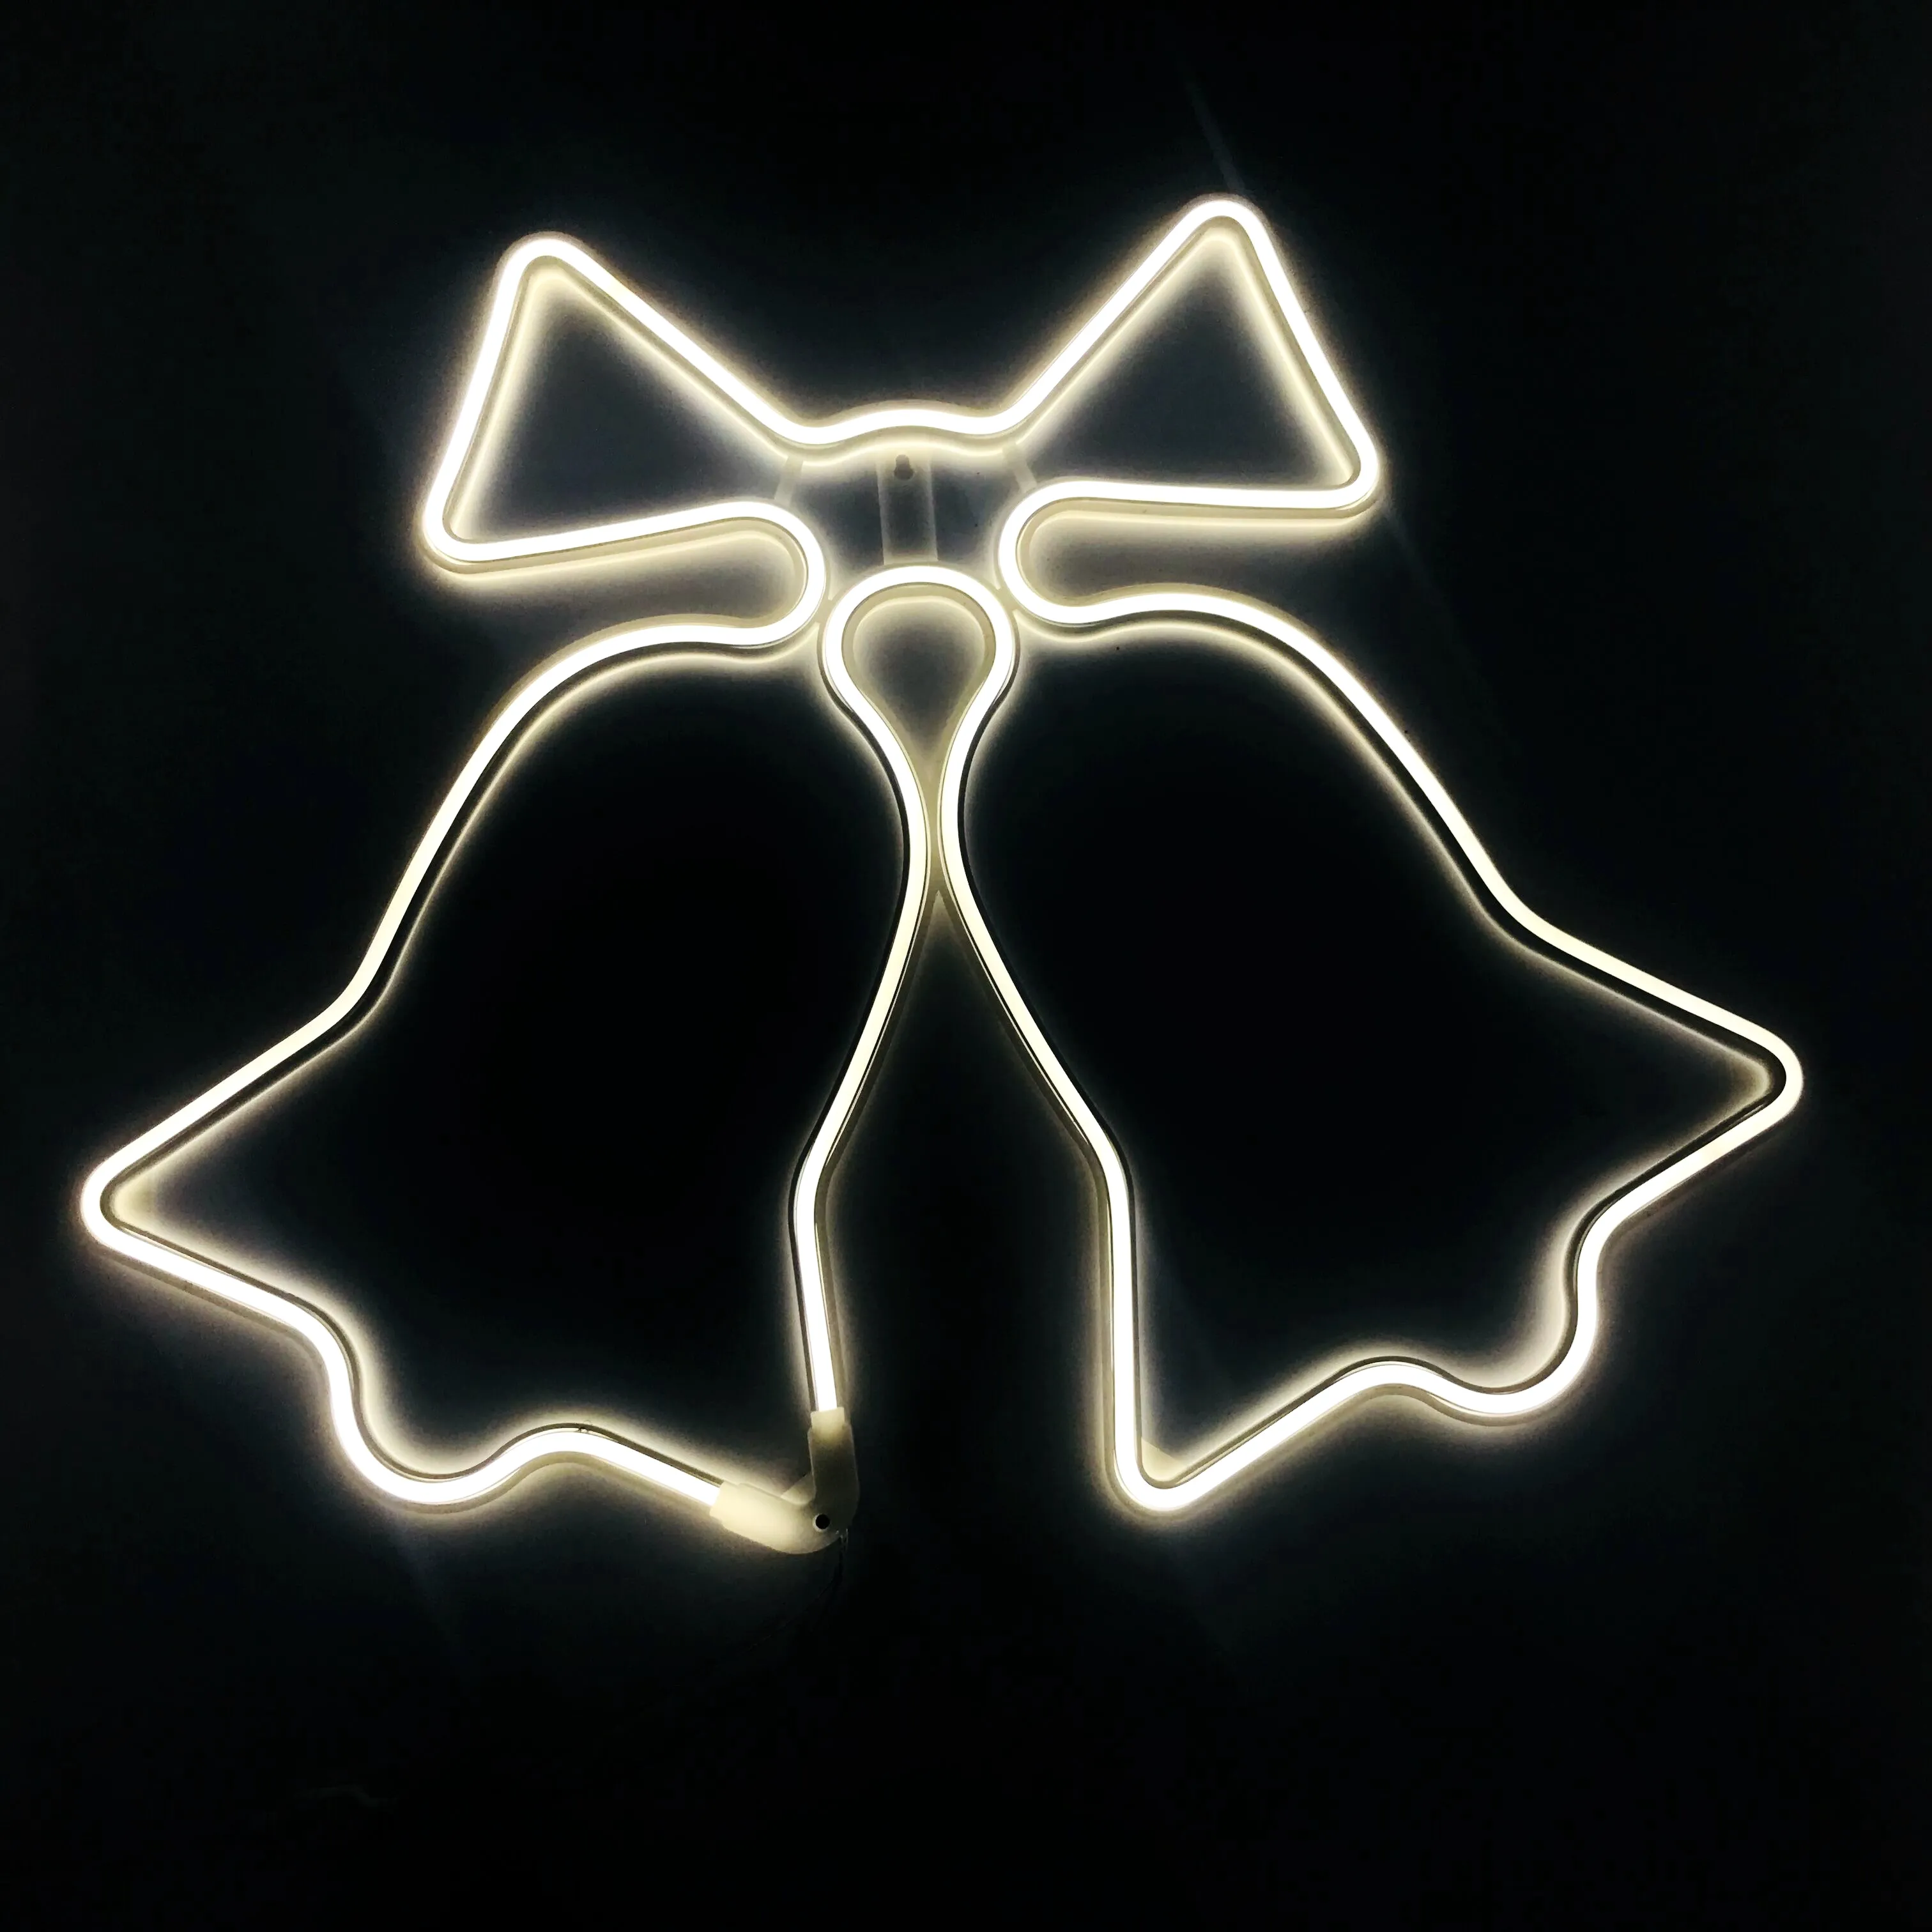 2D-Motiv im Freien Glocken förmiges Licht Weihnachts glocke Nachtlicht batterie USB-betriebene Wand dekorative Neonlichter für Party raum